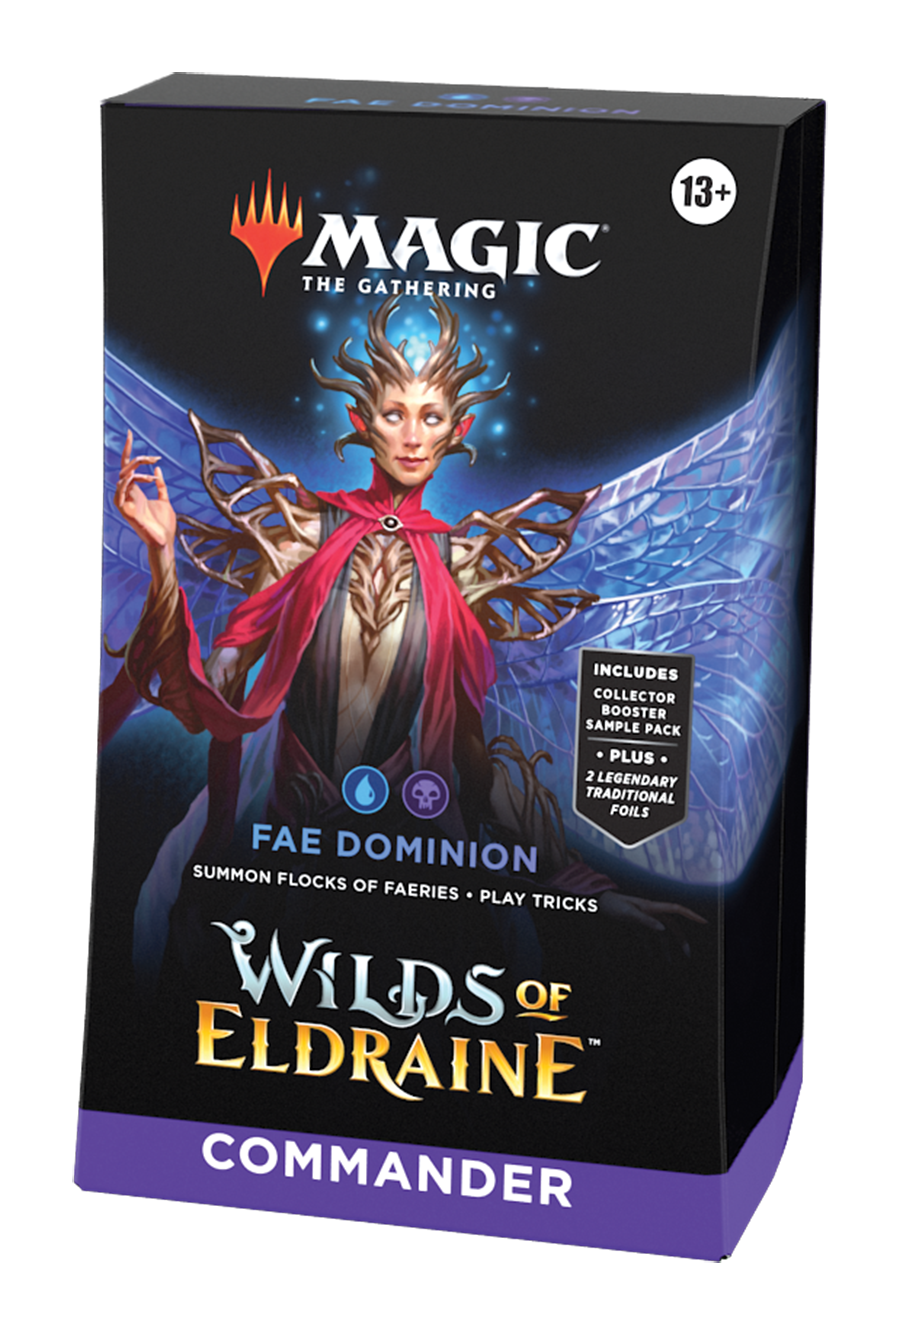 Wilds of Eldraine: 